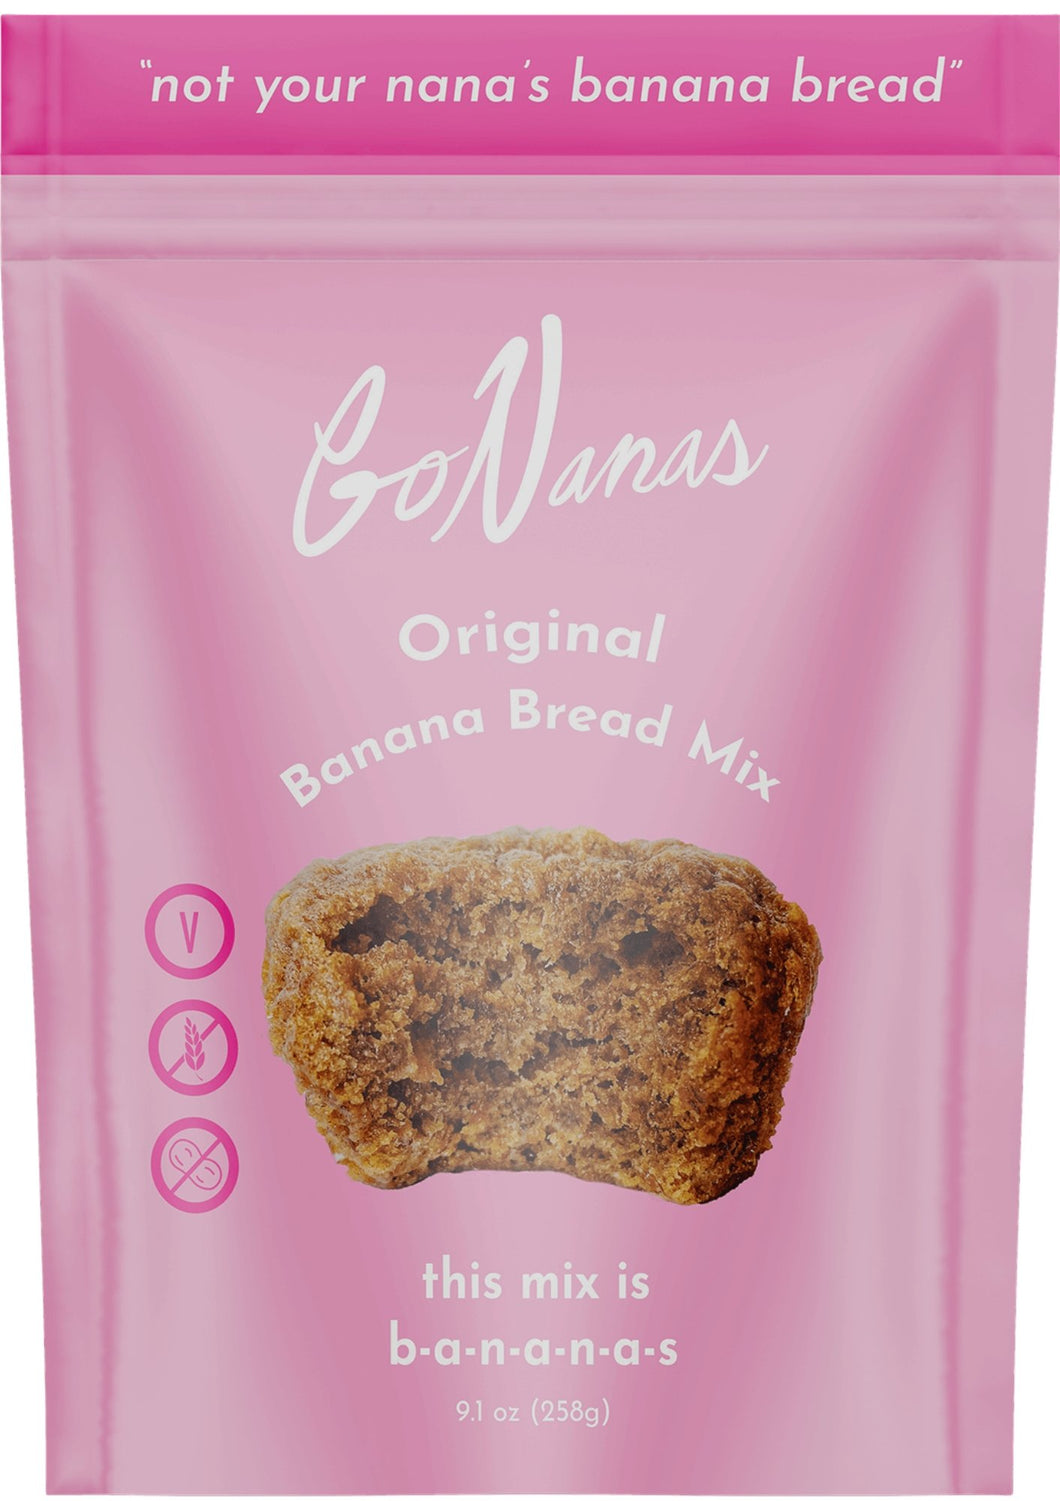 Buy Go Bananas LLC - Go Nanas Original Banana Bread Mix Bag - Pantry - Farm2Me - carro-6361197 - 860004024408 -